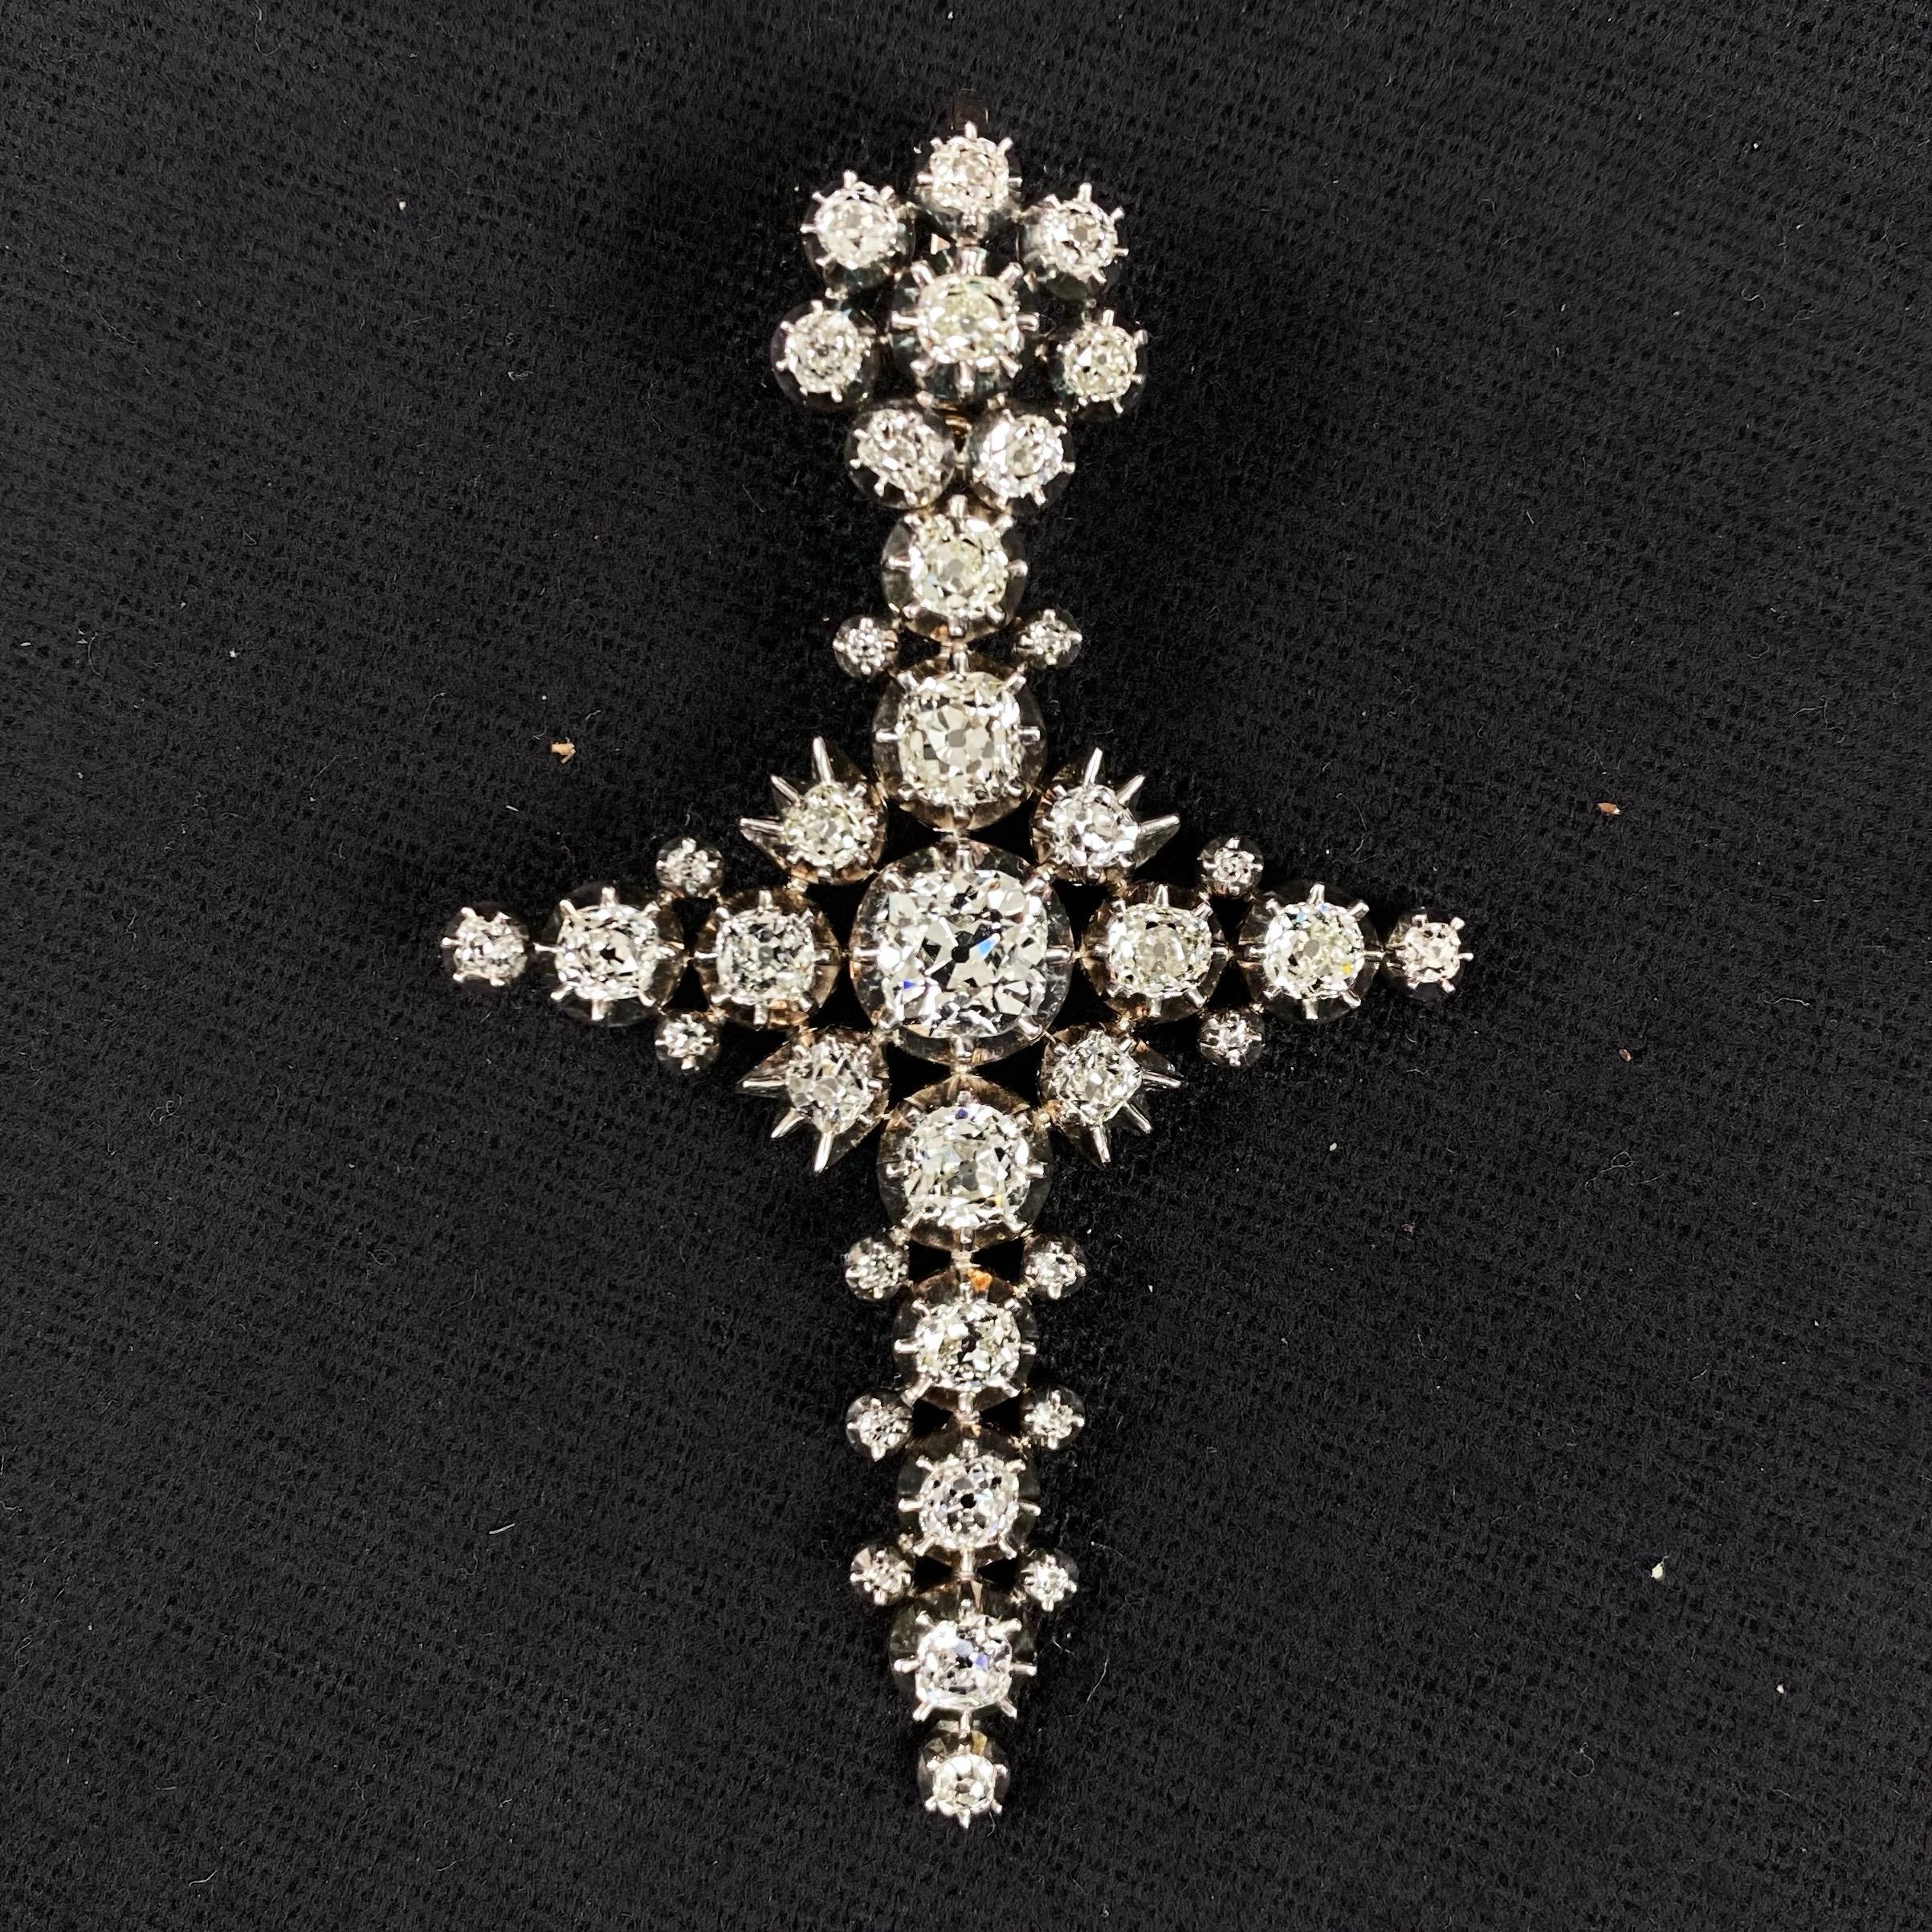 Antique Victorian Old Mine Diamond Cross Pendant Silver Gold Portuguese c. 1880 10